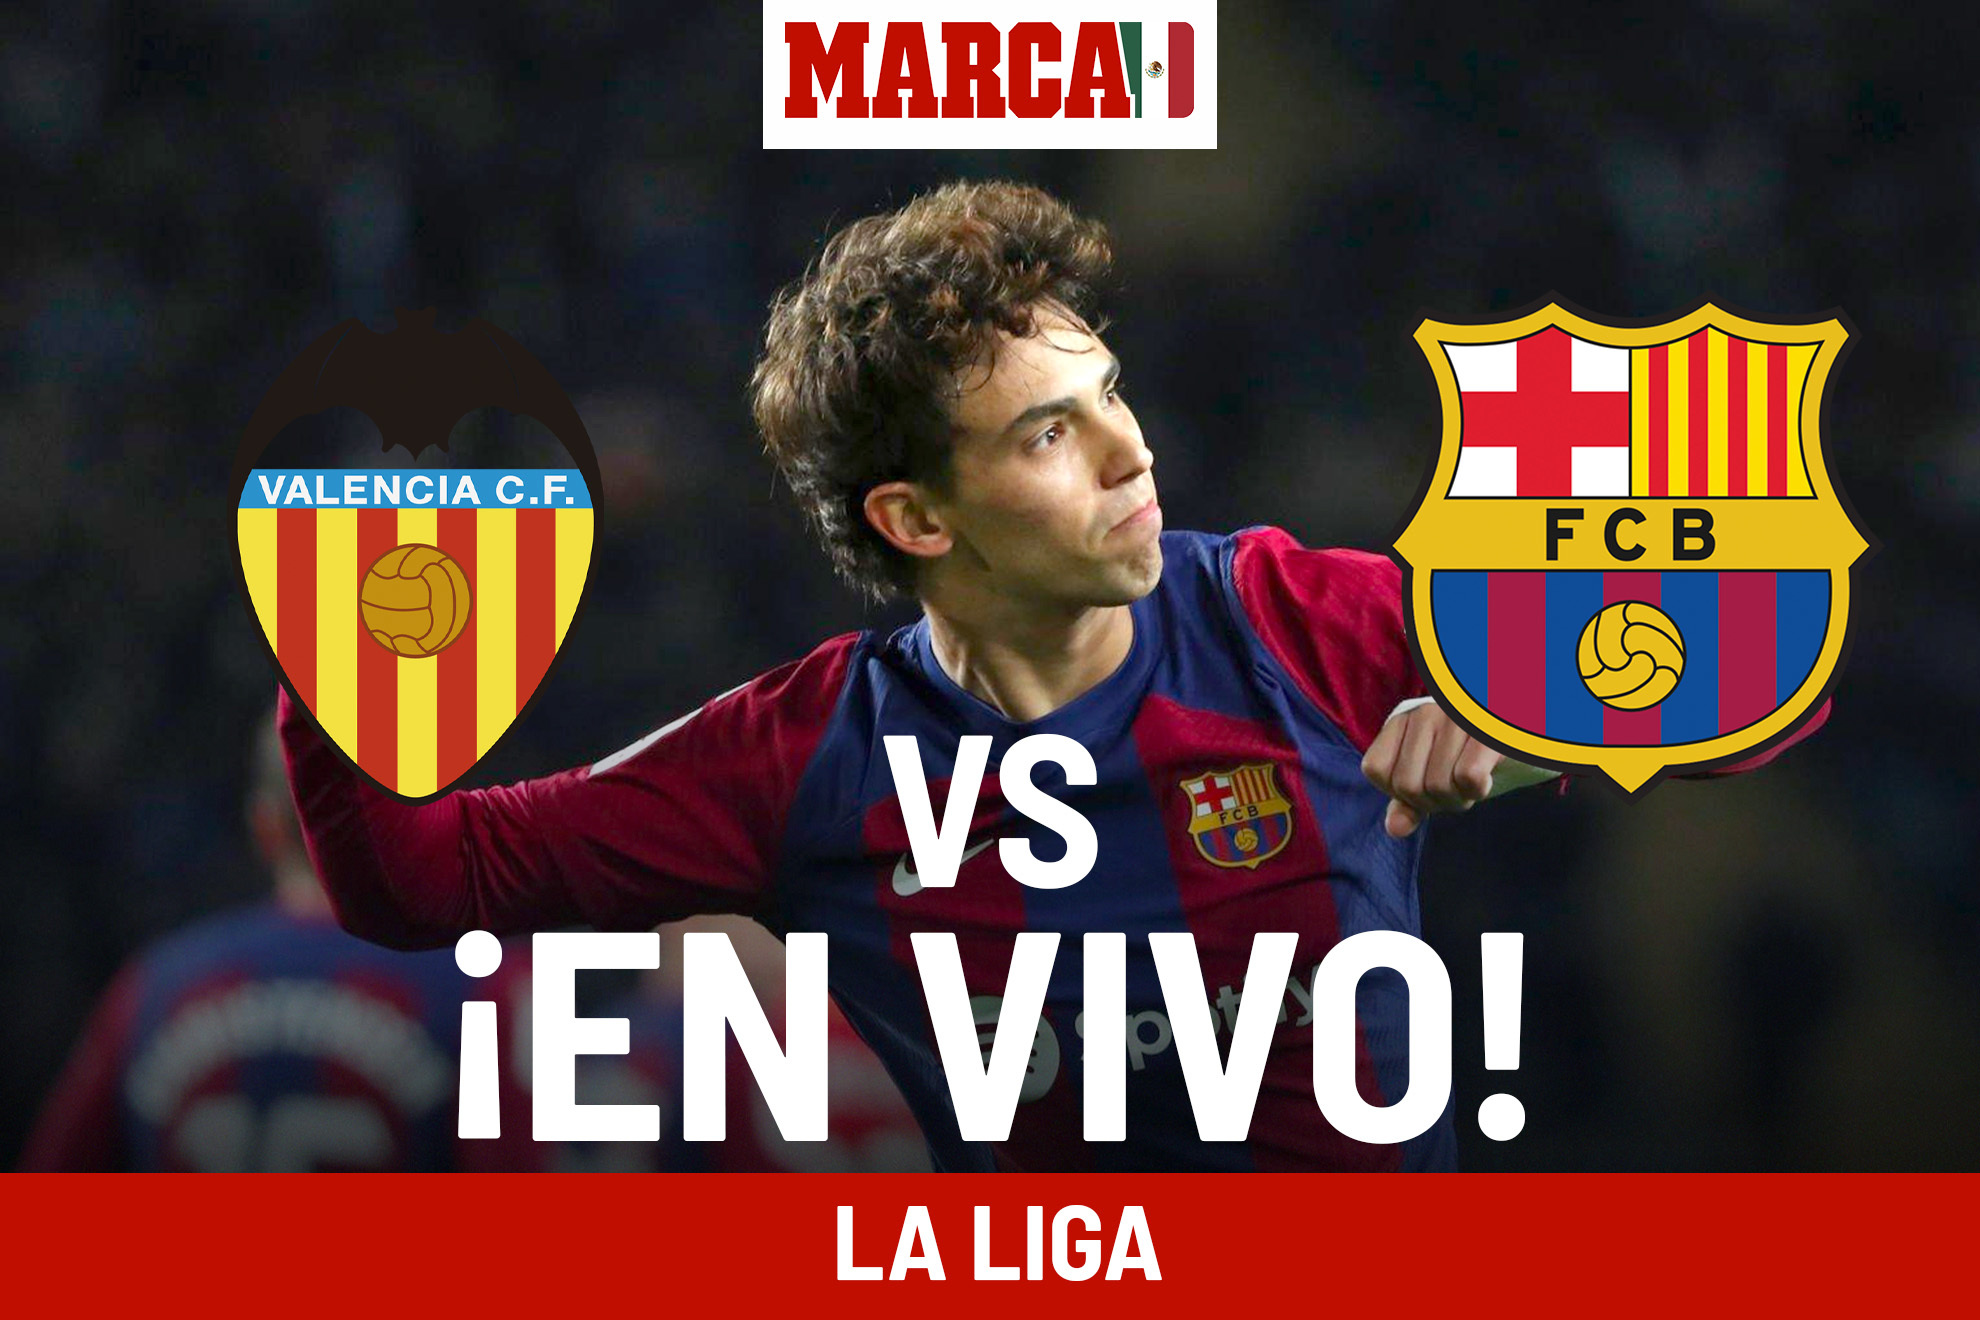 Valencia c. f. contra barcelona